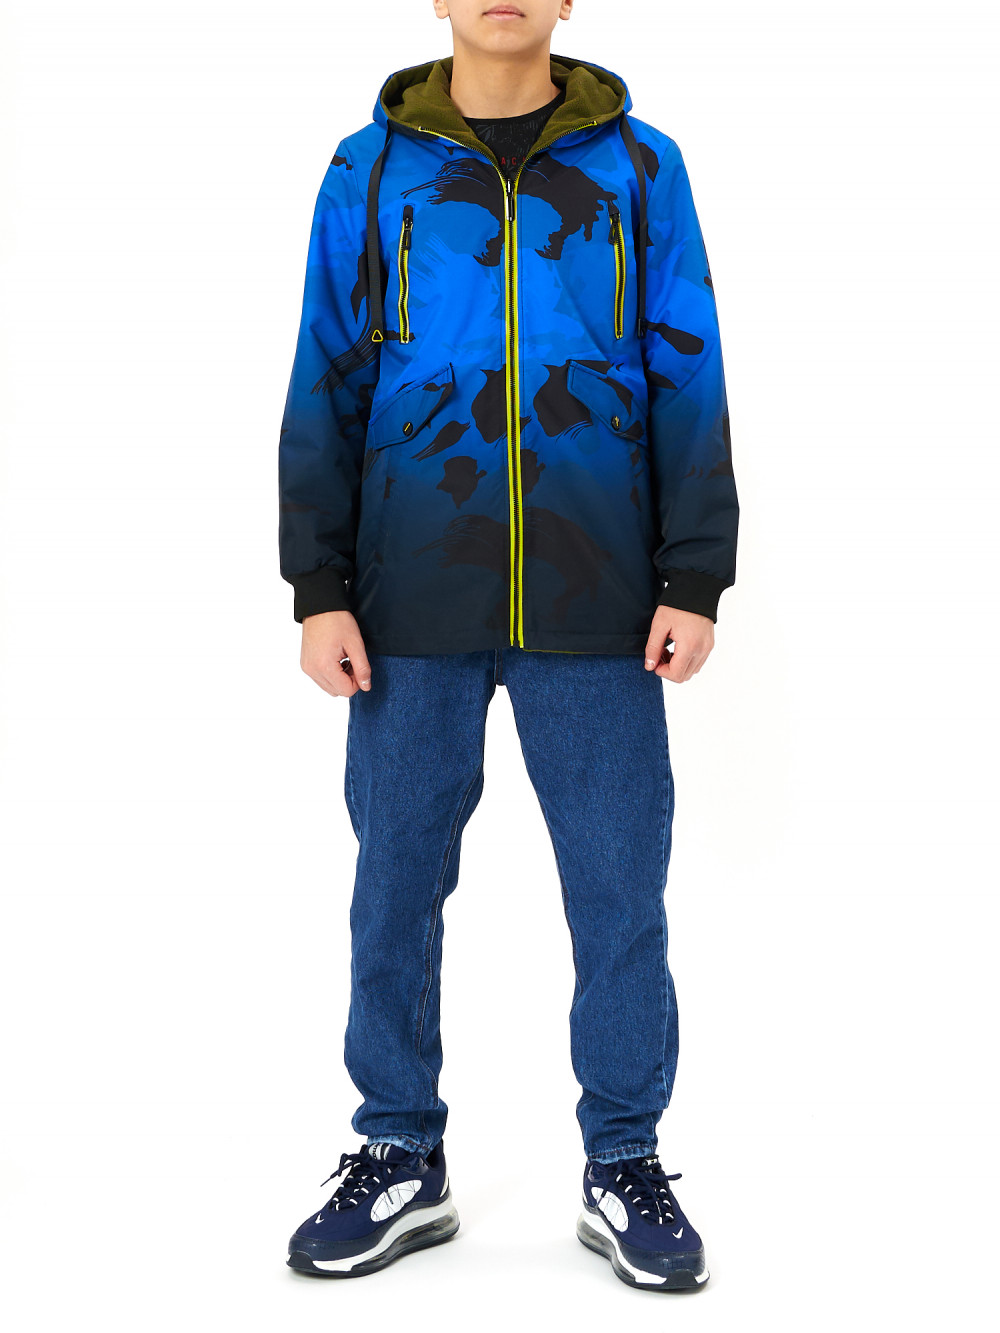 фото Куртка детская для мальчиков nobrand ad221 цвет синий размер 140